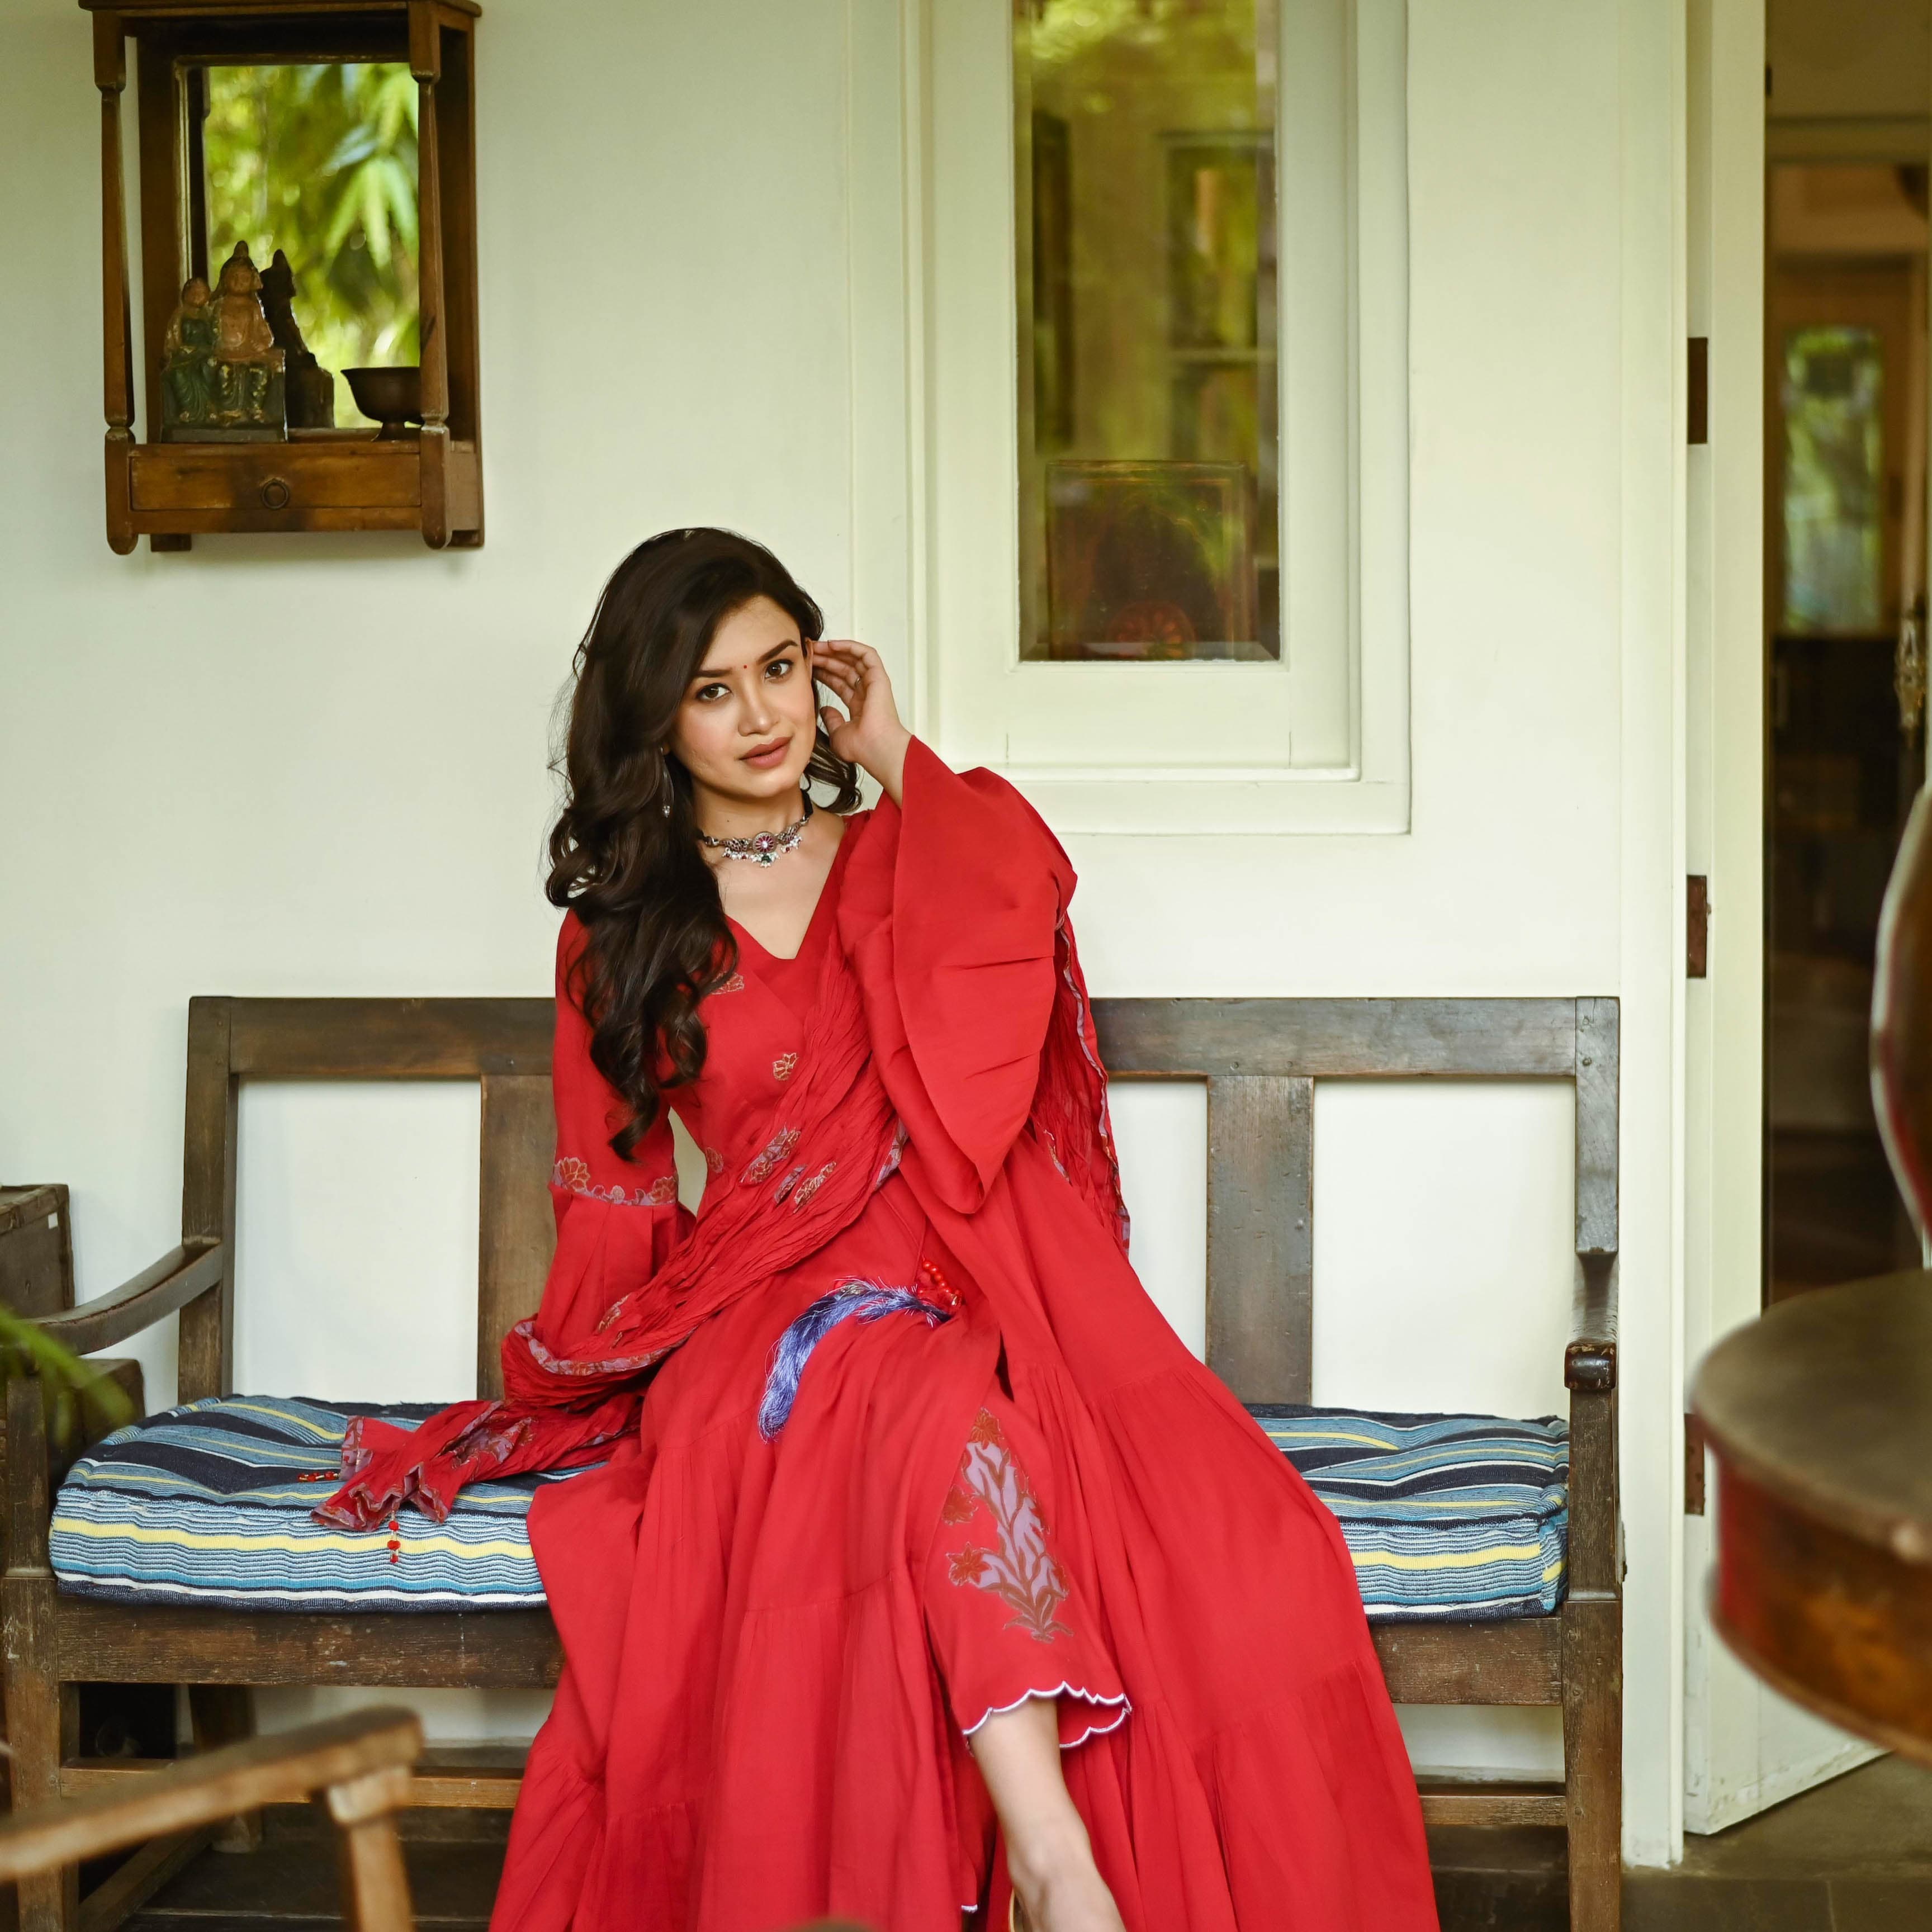 Premium Photo | Girl posing wearing shalwar kameez